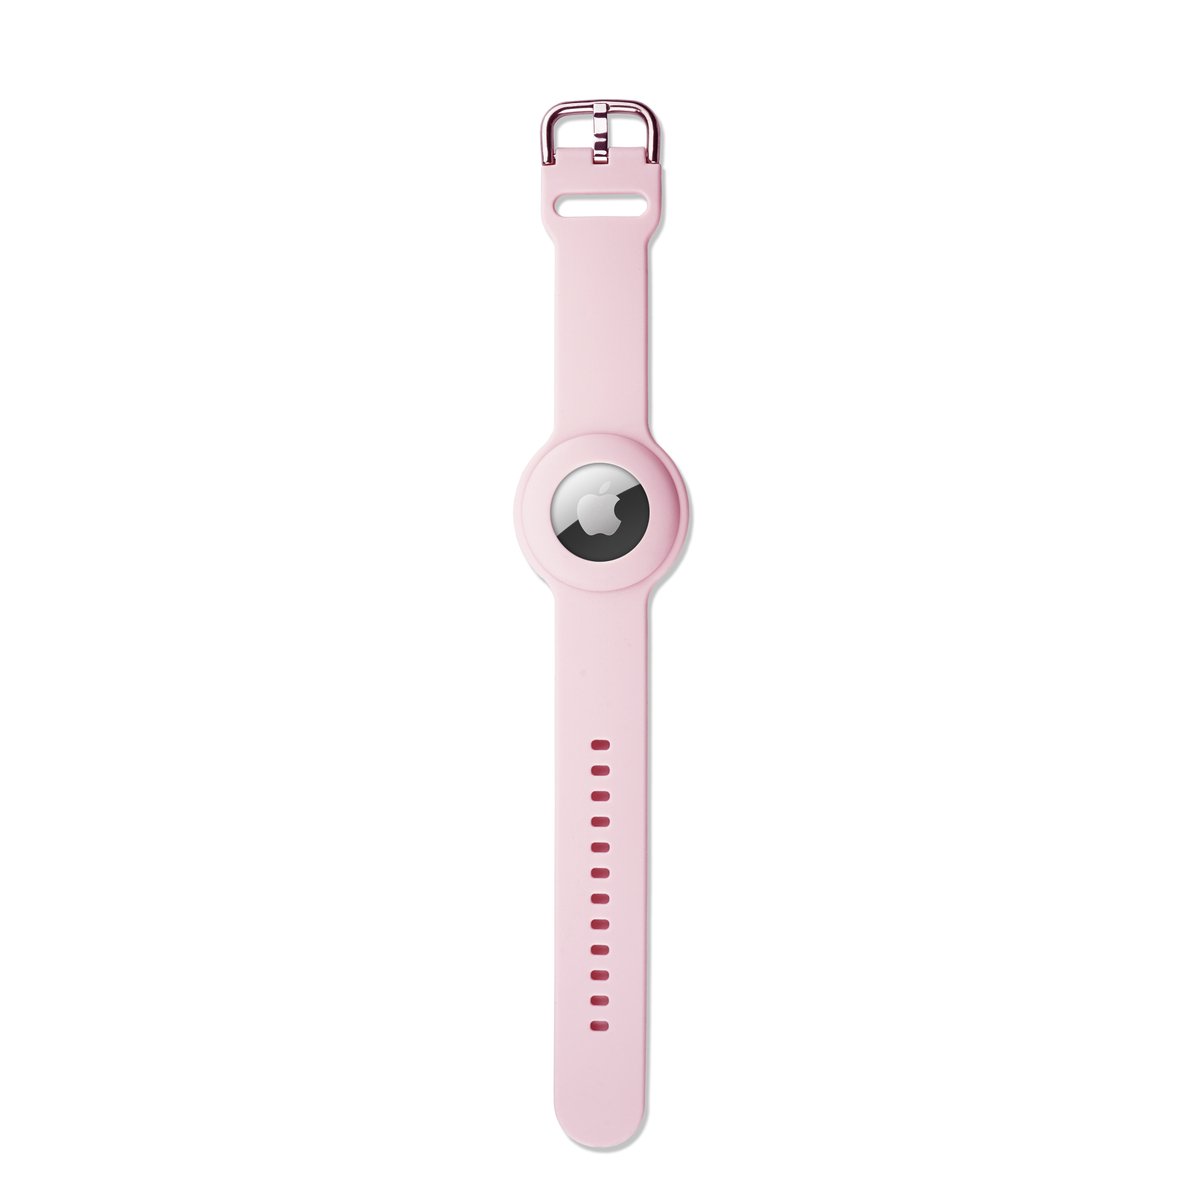 Ainy Apple Airtag horlogeband voor Kinderen - GPS tracker polsband - armband met veilige gespsluiting - veelzijdig jongens meisjes accessoire - Roze